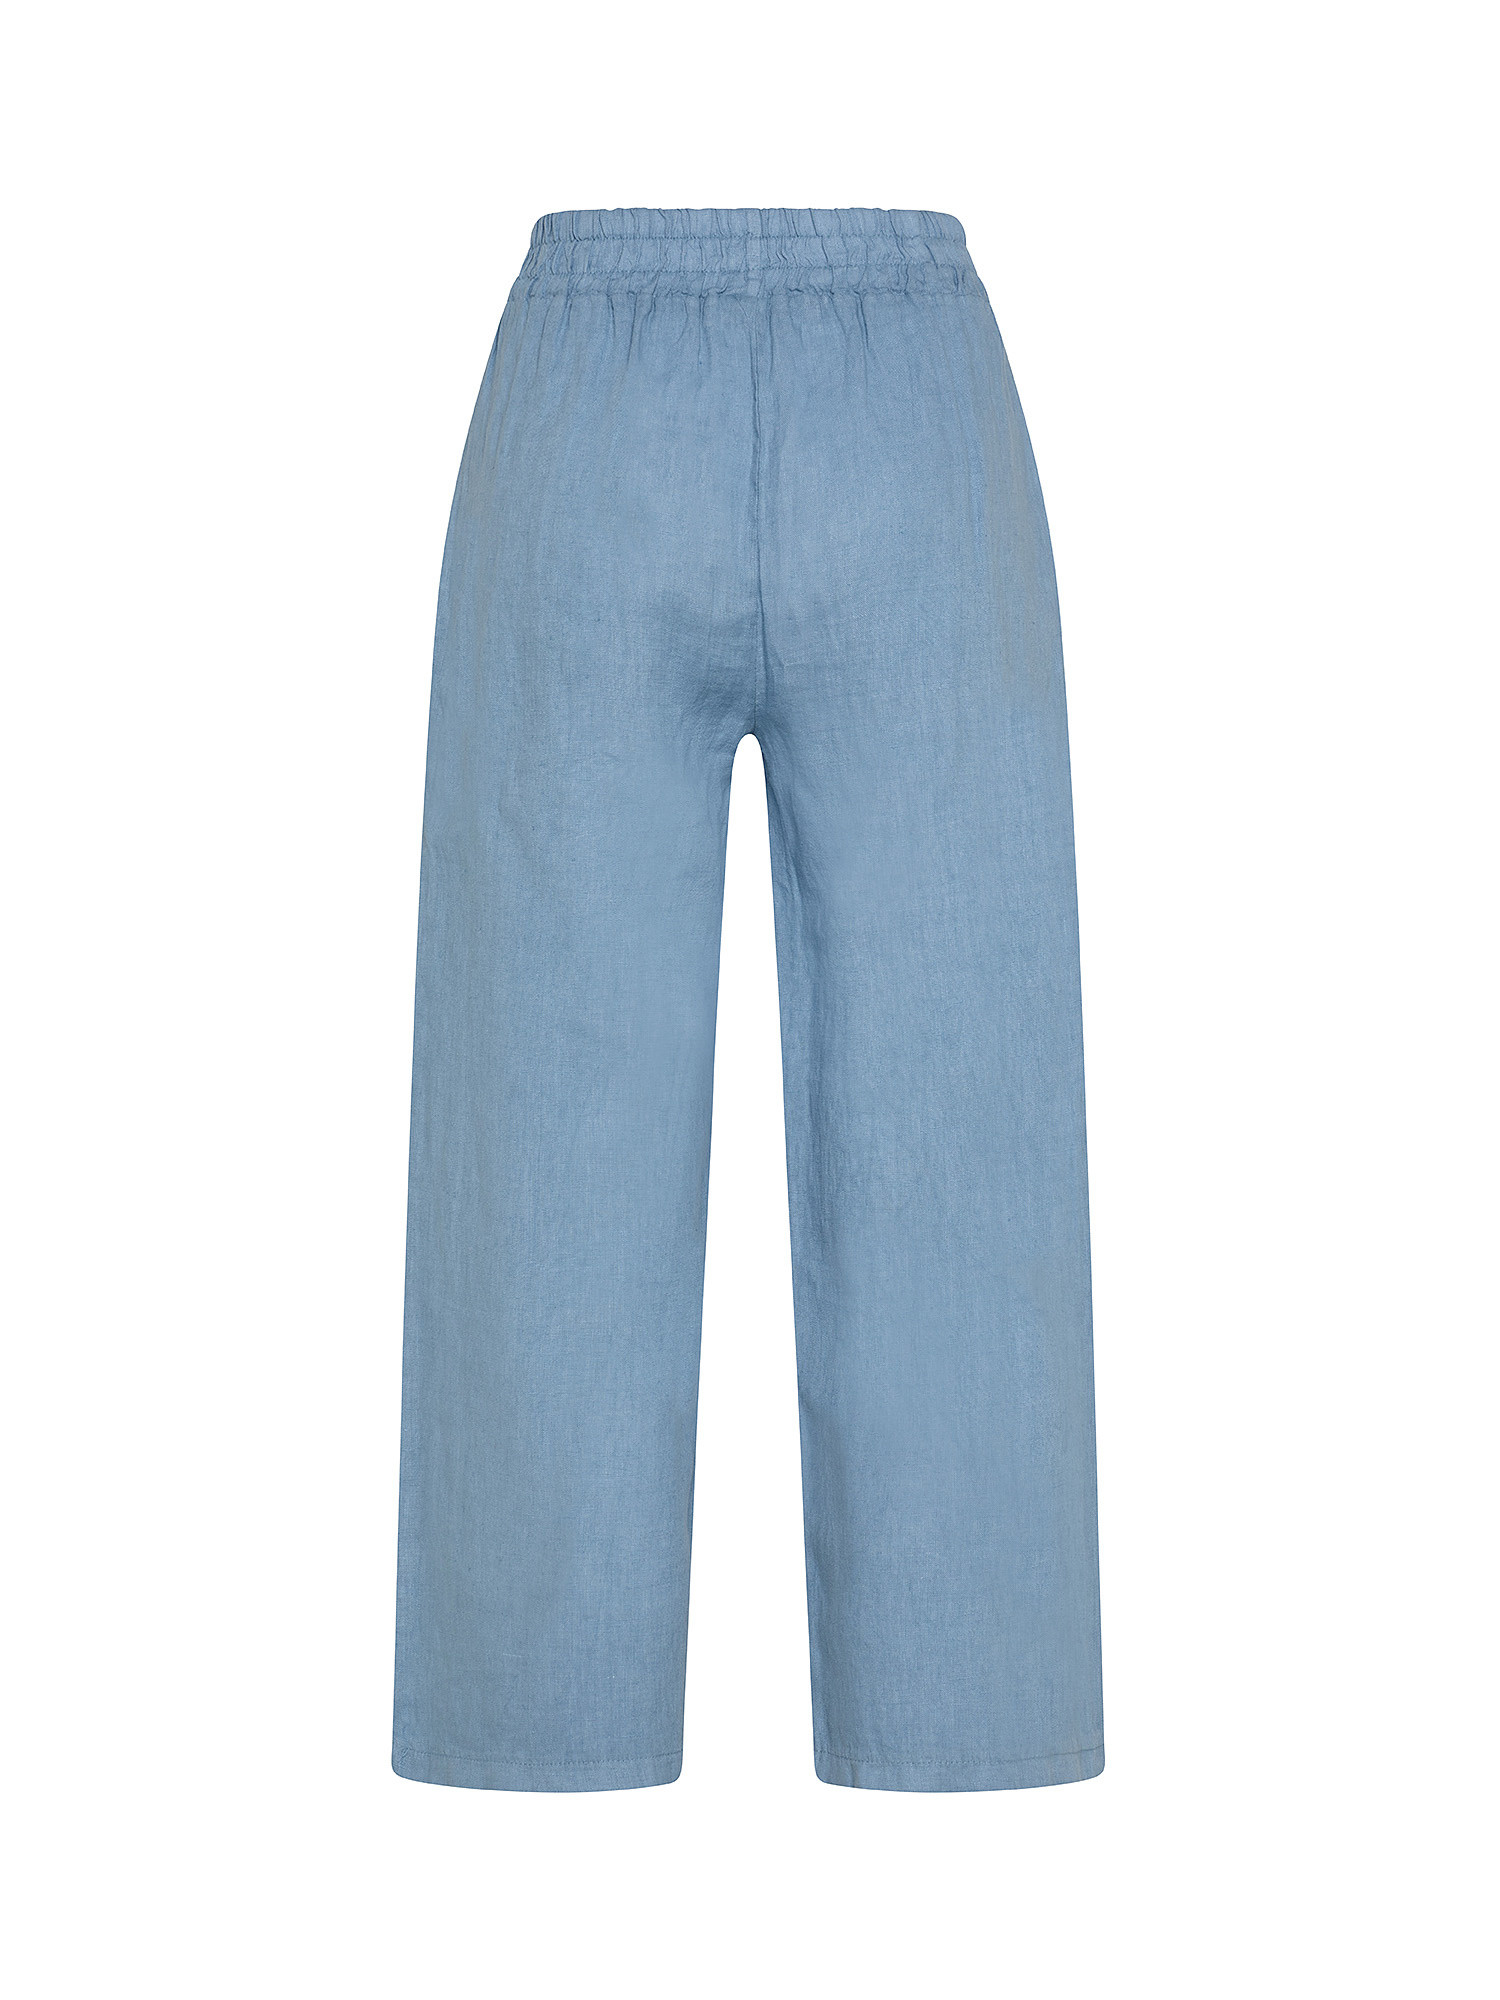 Pantalone puro lino con fusciacca, Azzurro, large image number 1